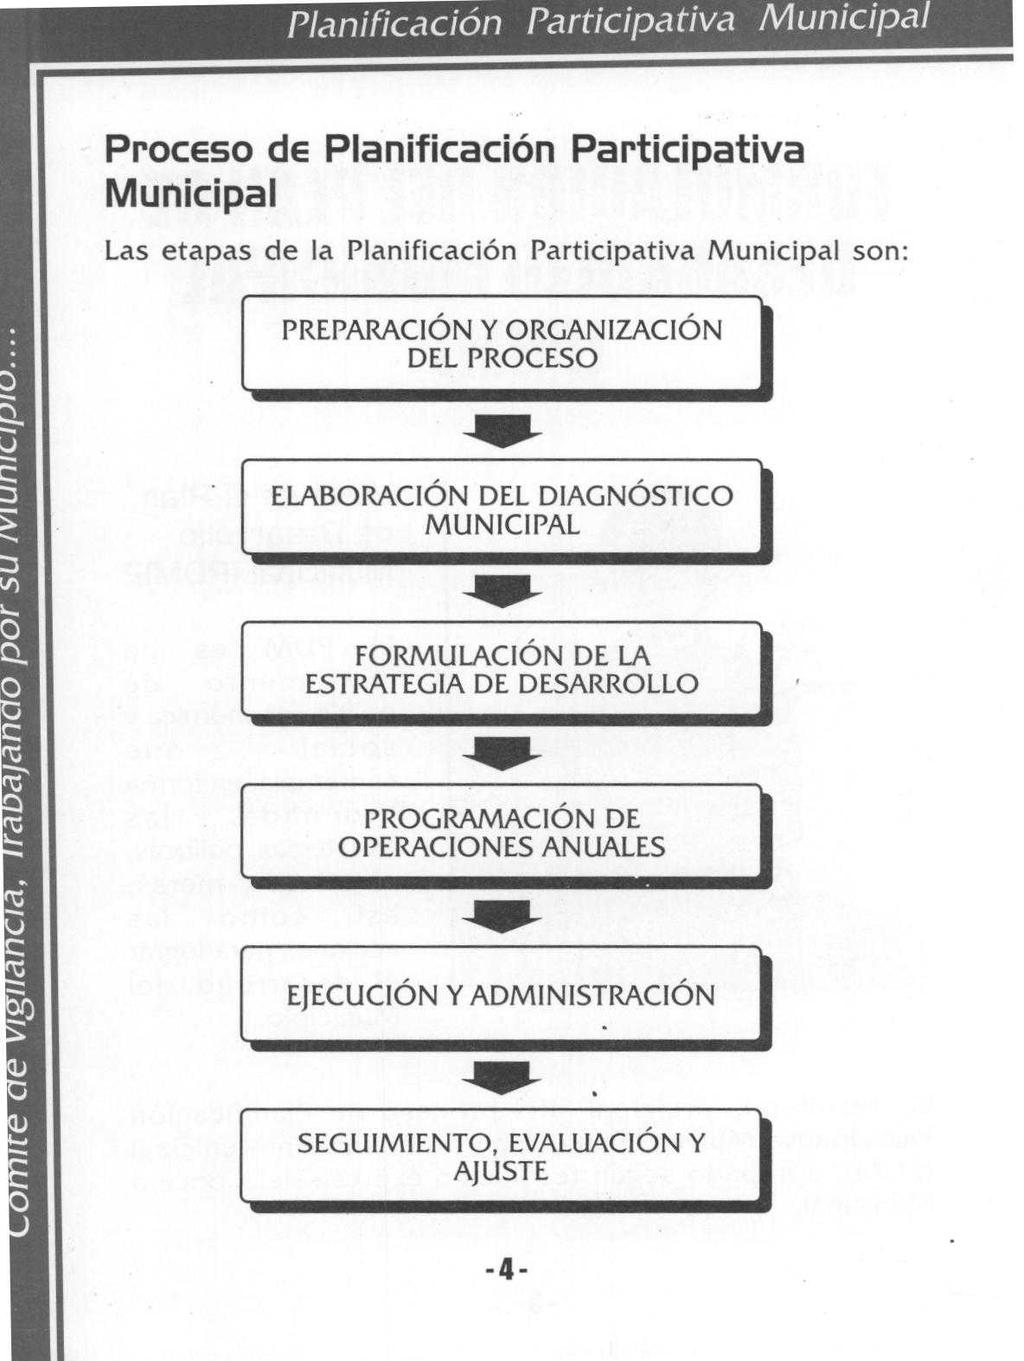 Planificación Participativa Municipa ProcEso de Planificación Participativa Municipal Las etapas de la Planificación Participativa Municipal son: PREPARACIÓN Y ORGANIZACIÓN DEL PROCESO ^i